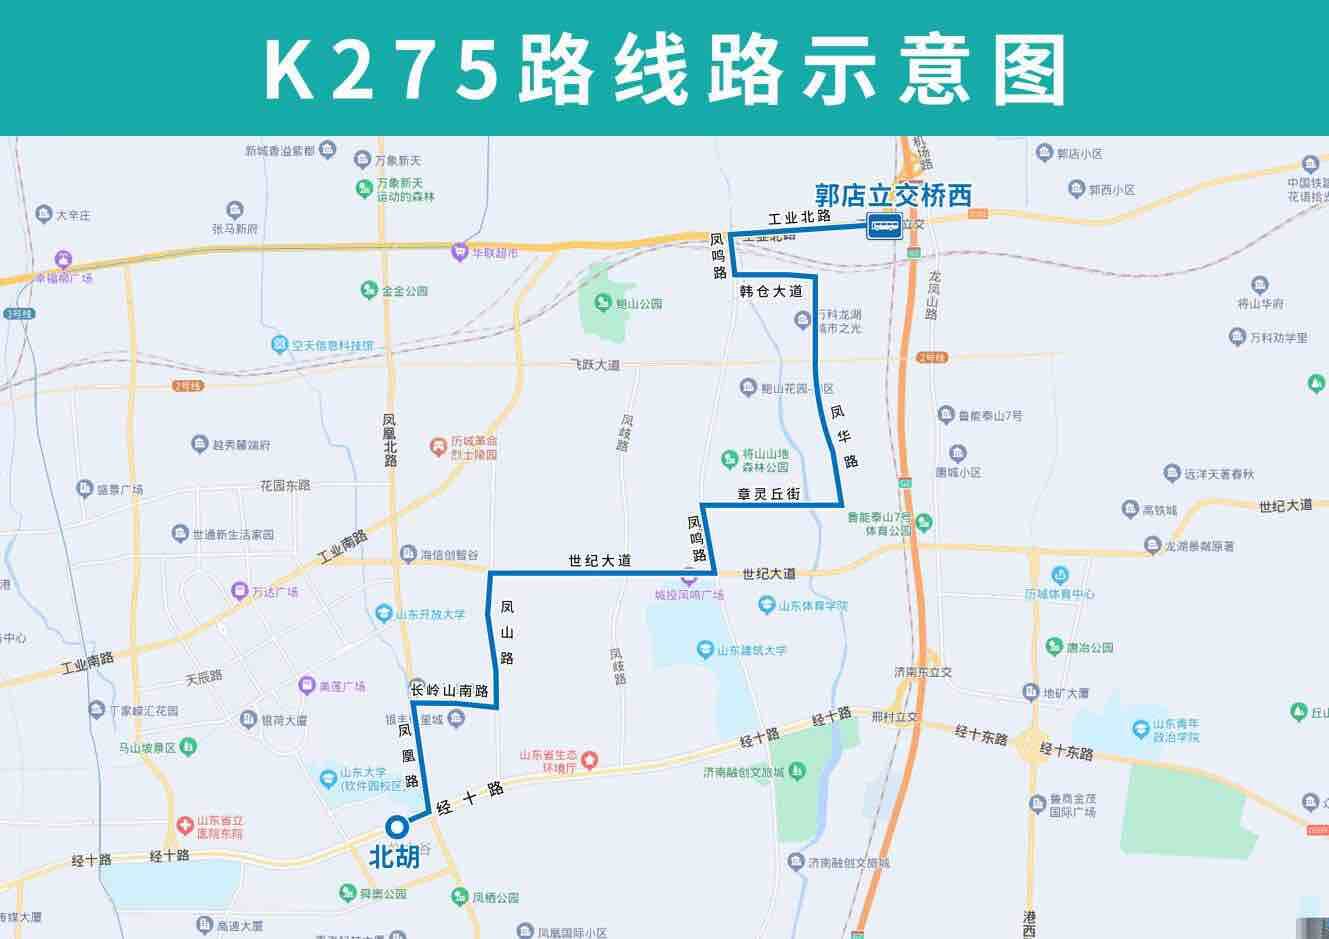 方便凤华路、凤鸣路等沿线居民出行 明起济南公交开通试运行K275路